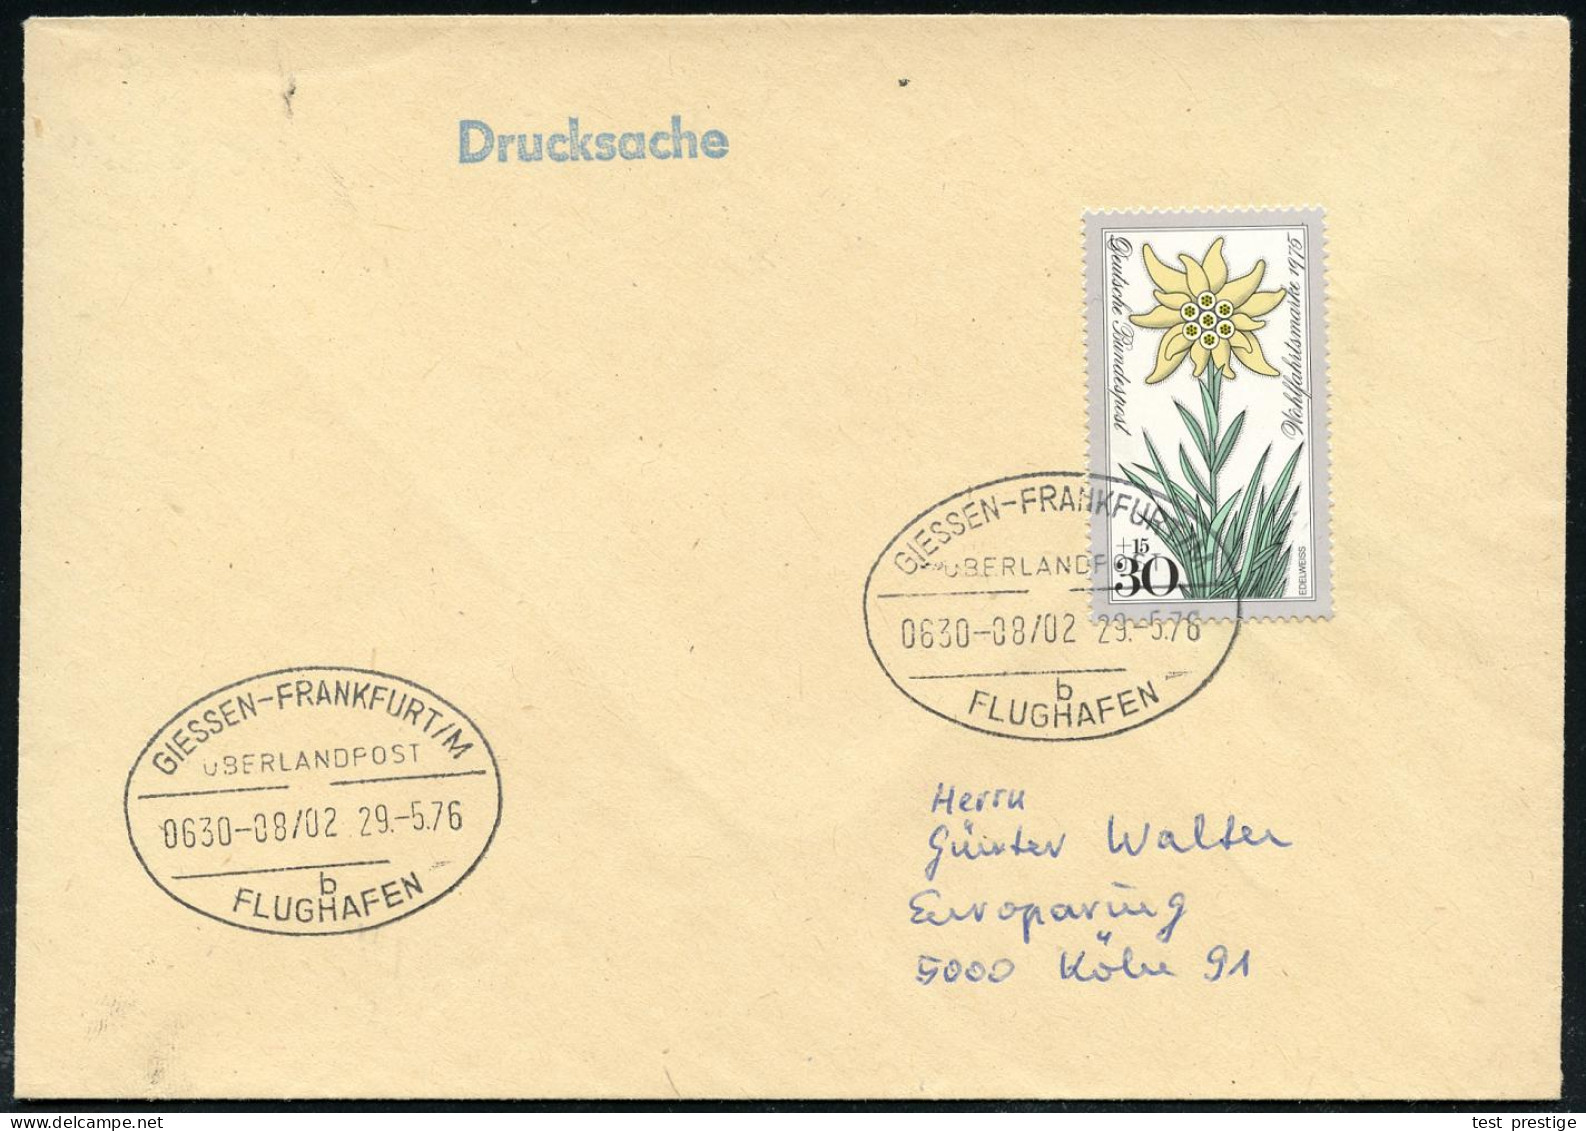 GIESSEN-FRANKFURT/ M/ ÜBERLANDPOST/ 0630-08/ 02/ B/ FLUGHAFEN 1976 (29.5.) Oval-St. = Mobiles Postamt Im Überland-Postom - Autos